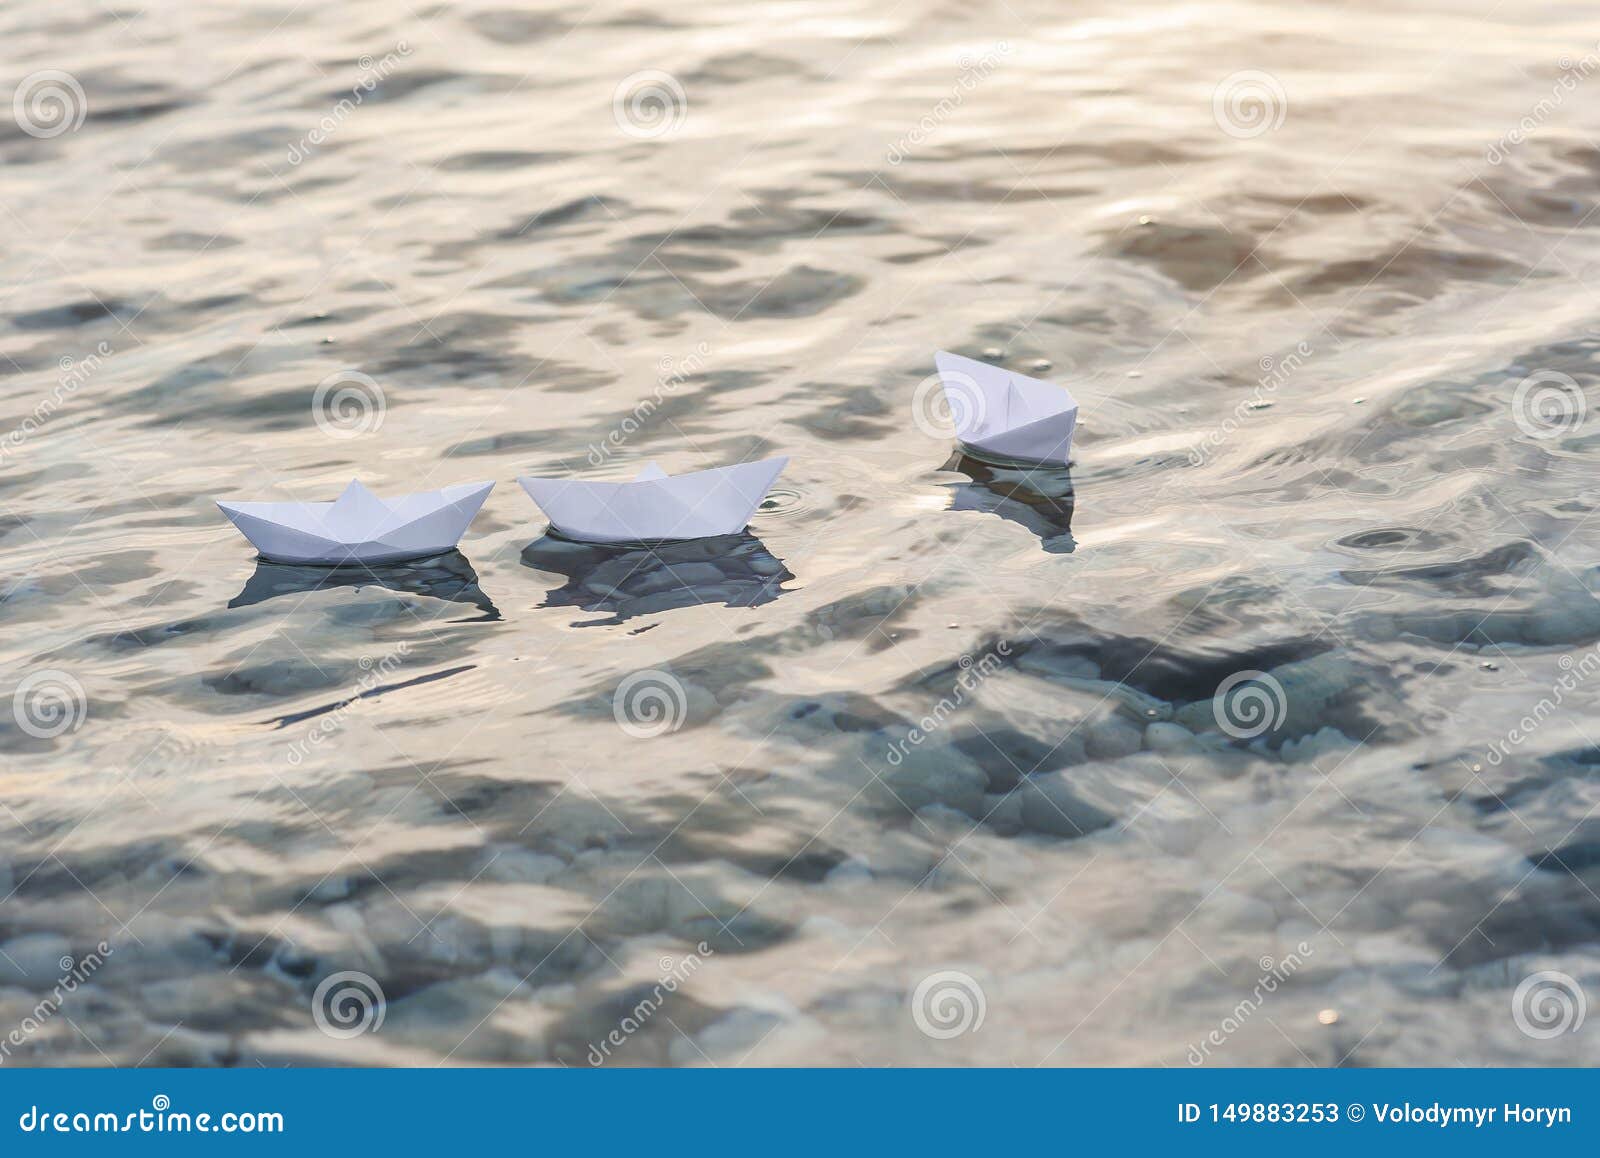 Drei Papierboote, die in Wellen auf dem Wasser bei Sonnenuntergang schwimmen. Gruppe von drei Papierbooten, die in Wellen auf dem Wasser bei Sonnenuntergang schwimmen